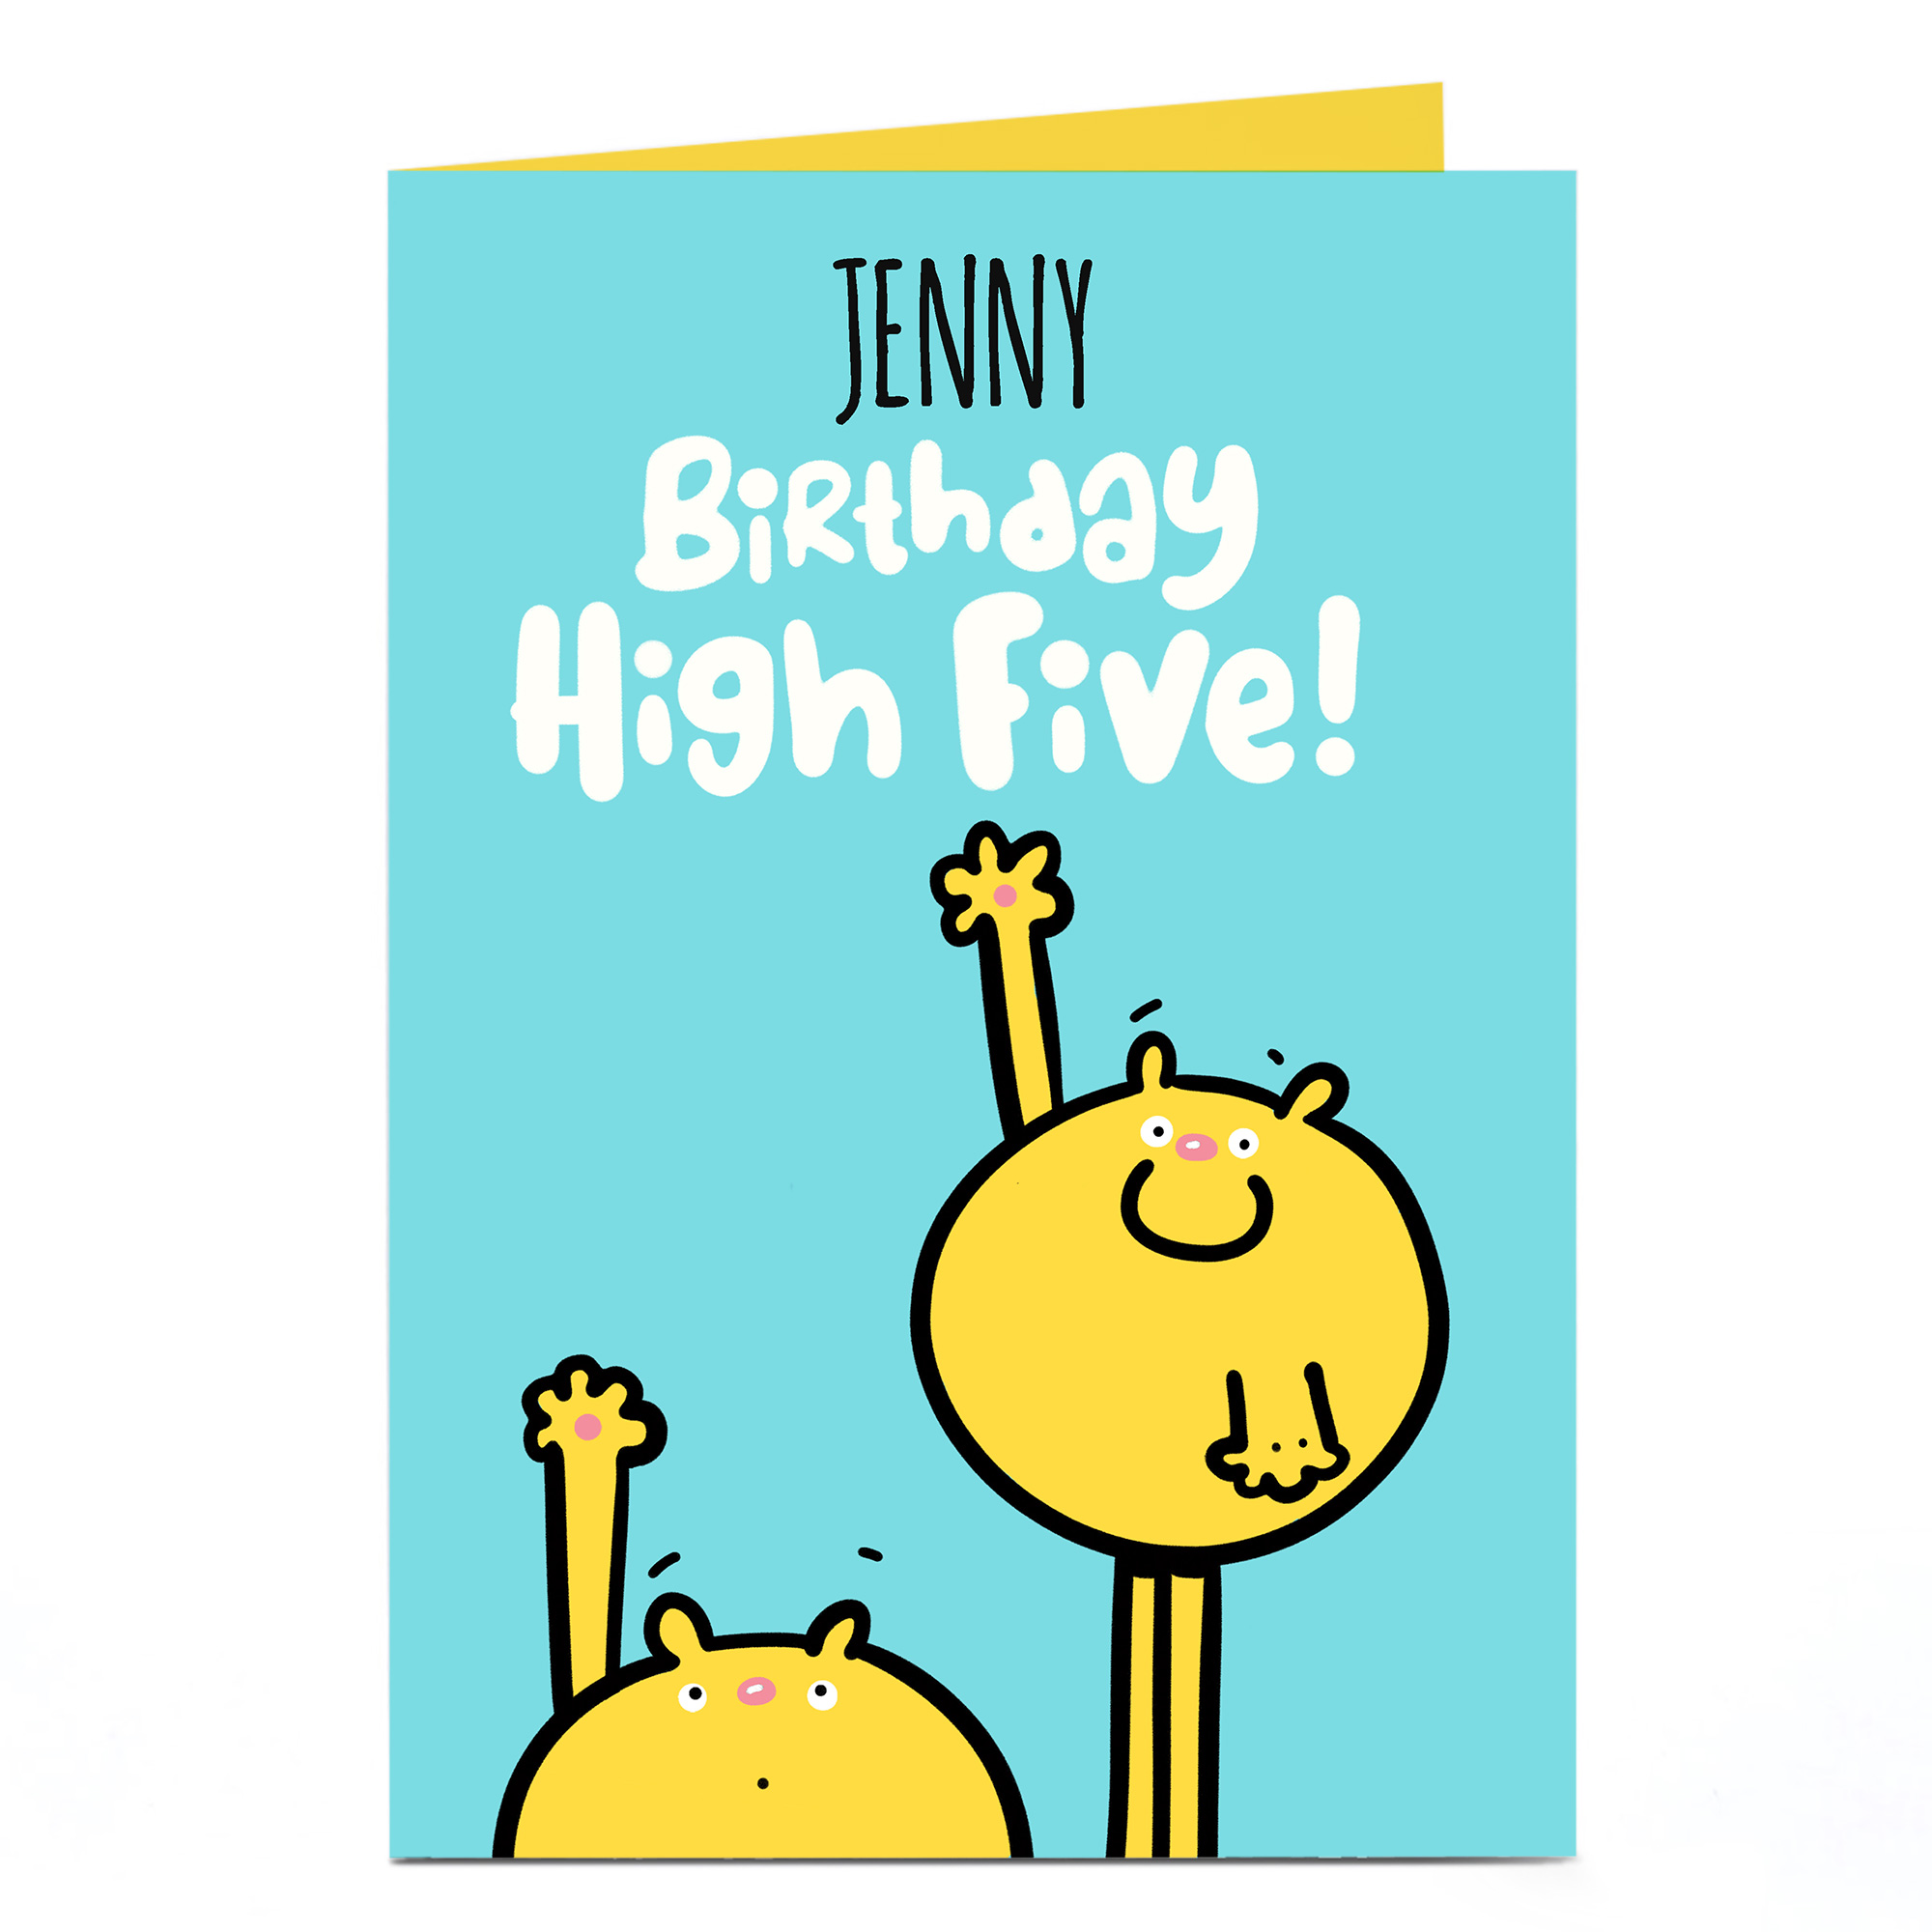 Personalised Fruitloops Birthday Card - High Five!